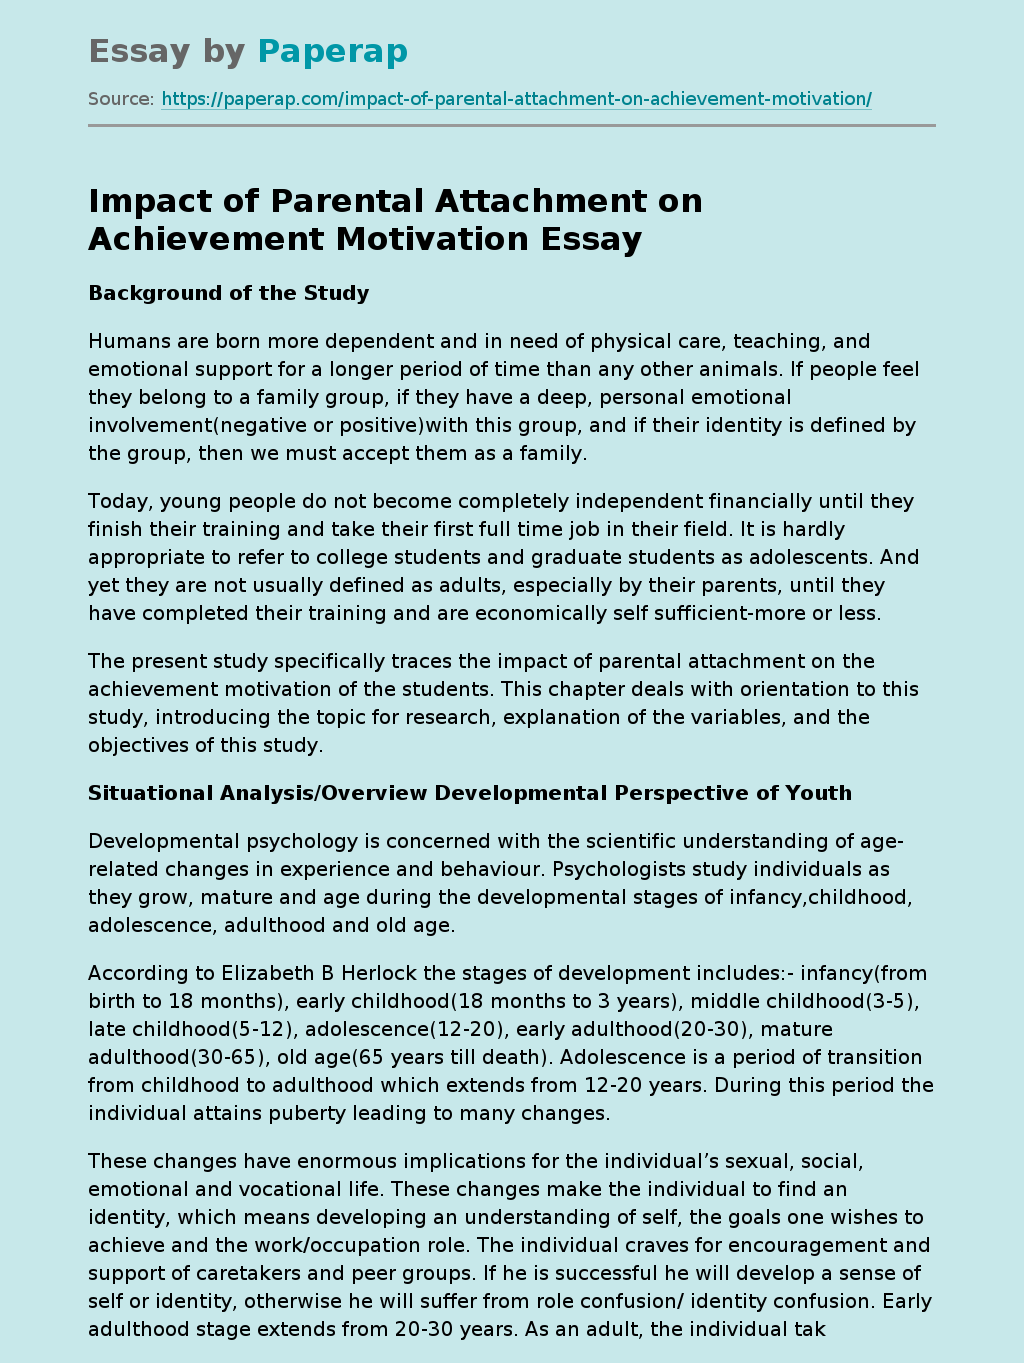 Impact of Parental Attachment on Achievement Motivation